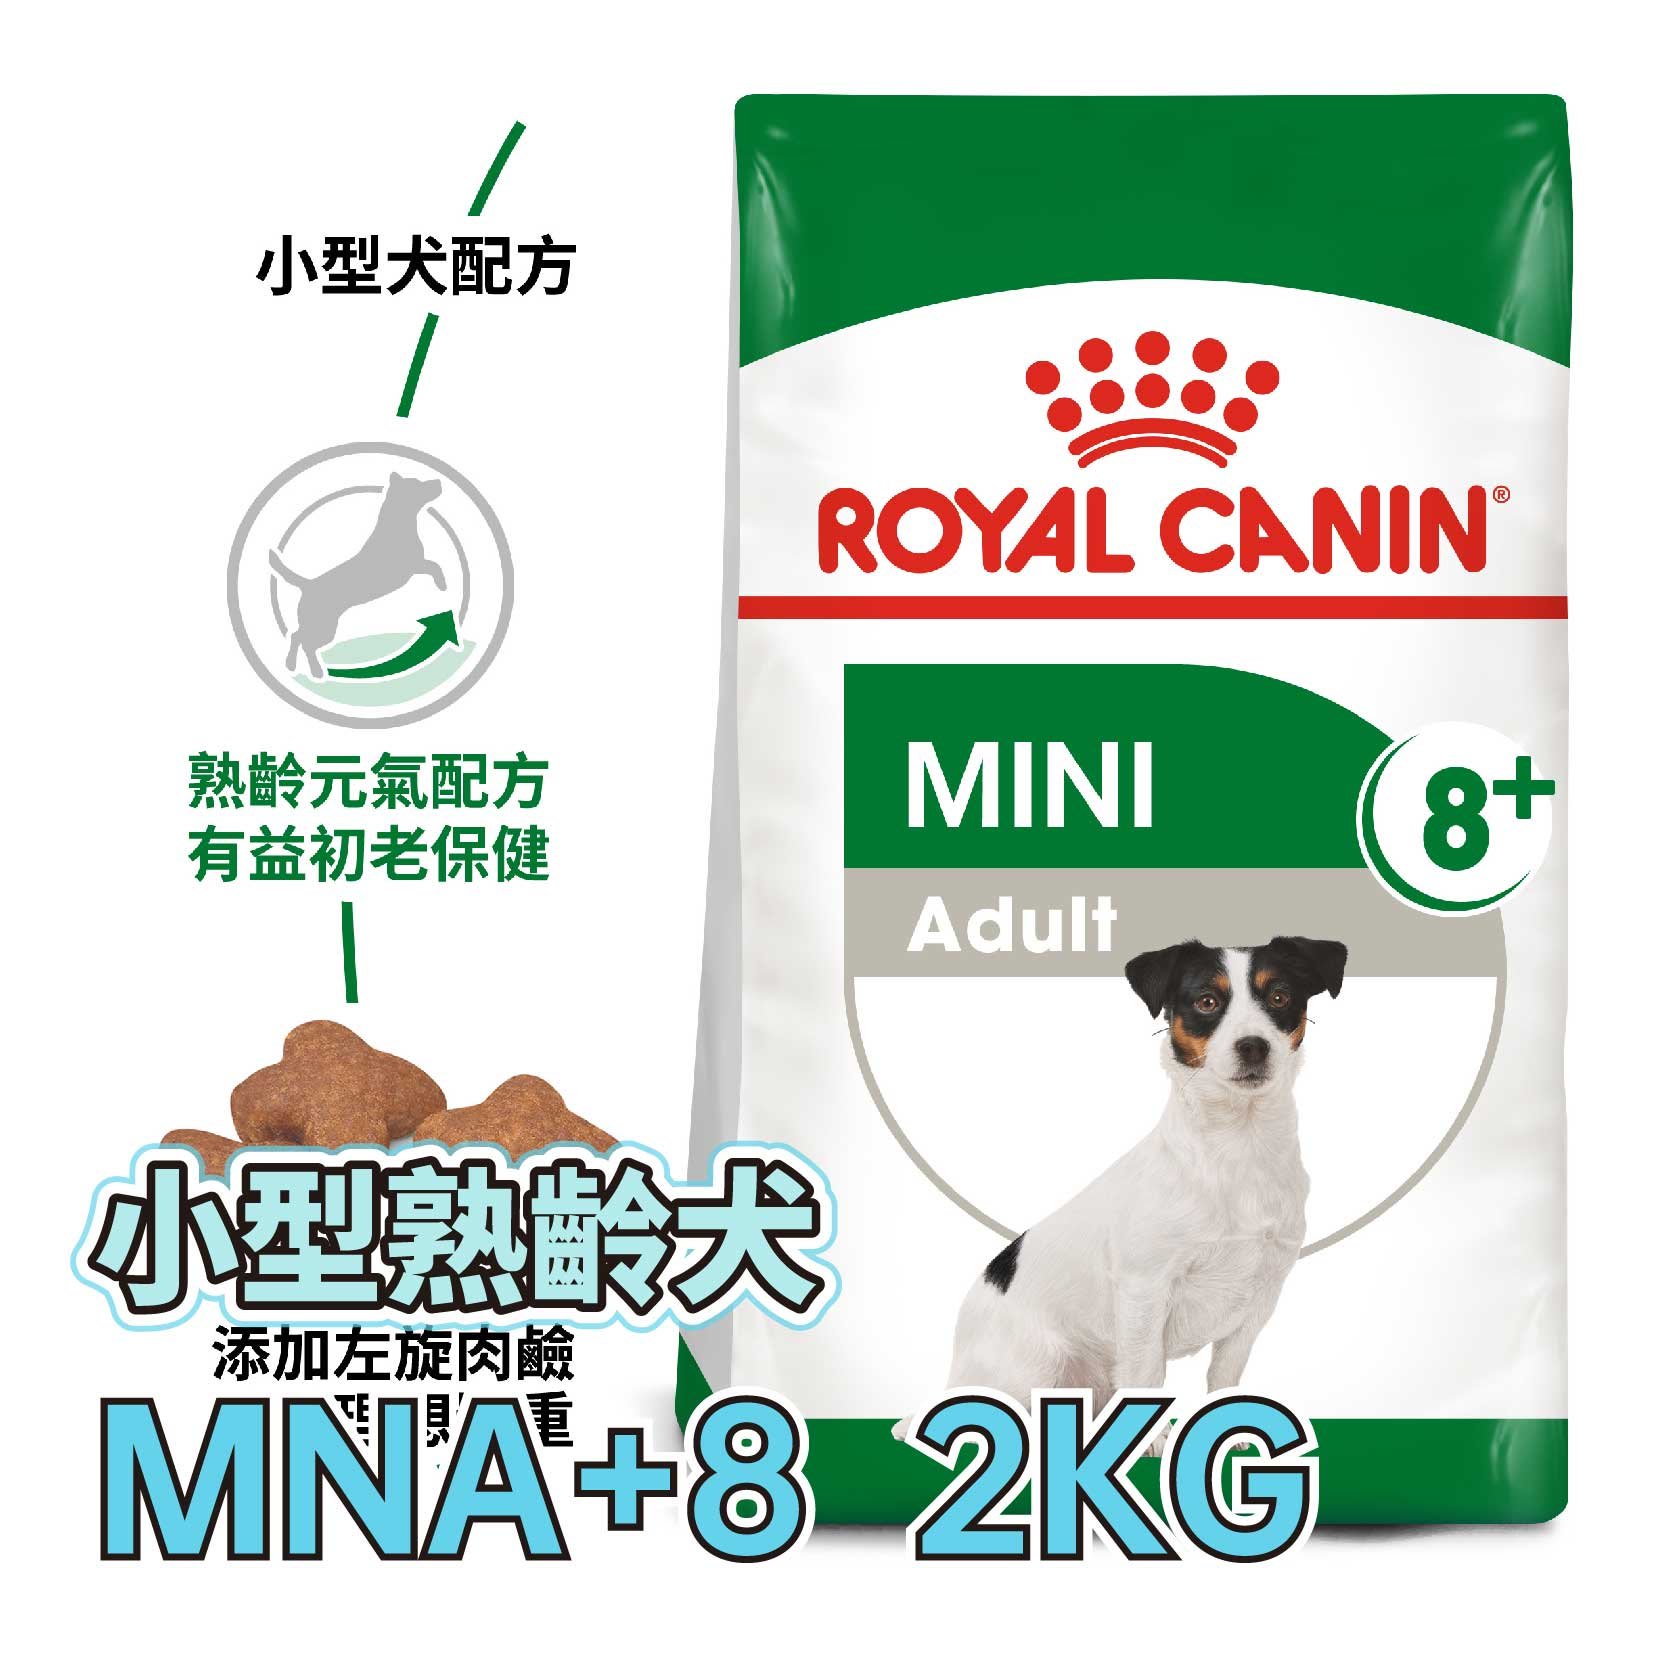 ☆寵物王子☆ 皇家 PR+8 / MNA+8 小型熟齡犬8+  2KG / 2公斤 老犬 犬糧